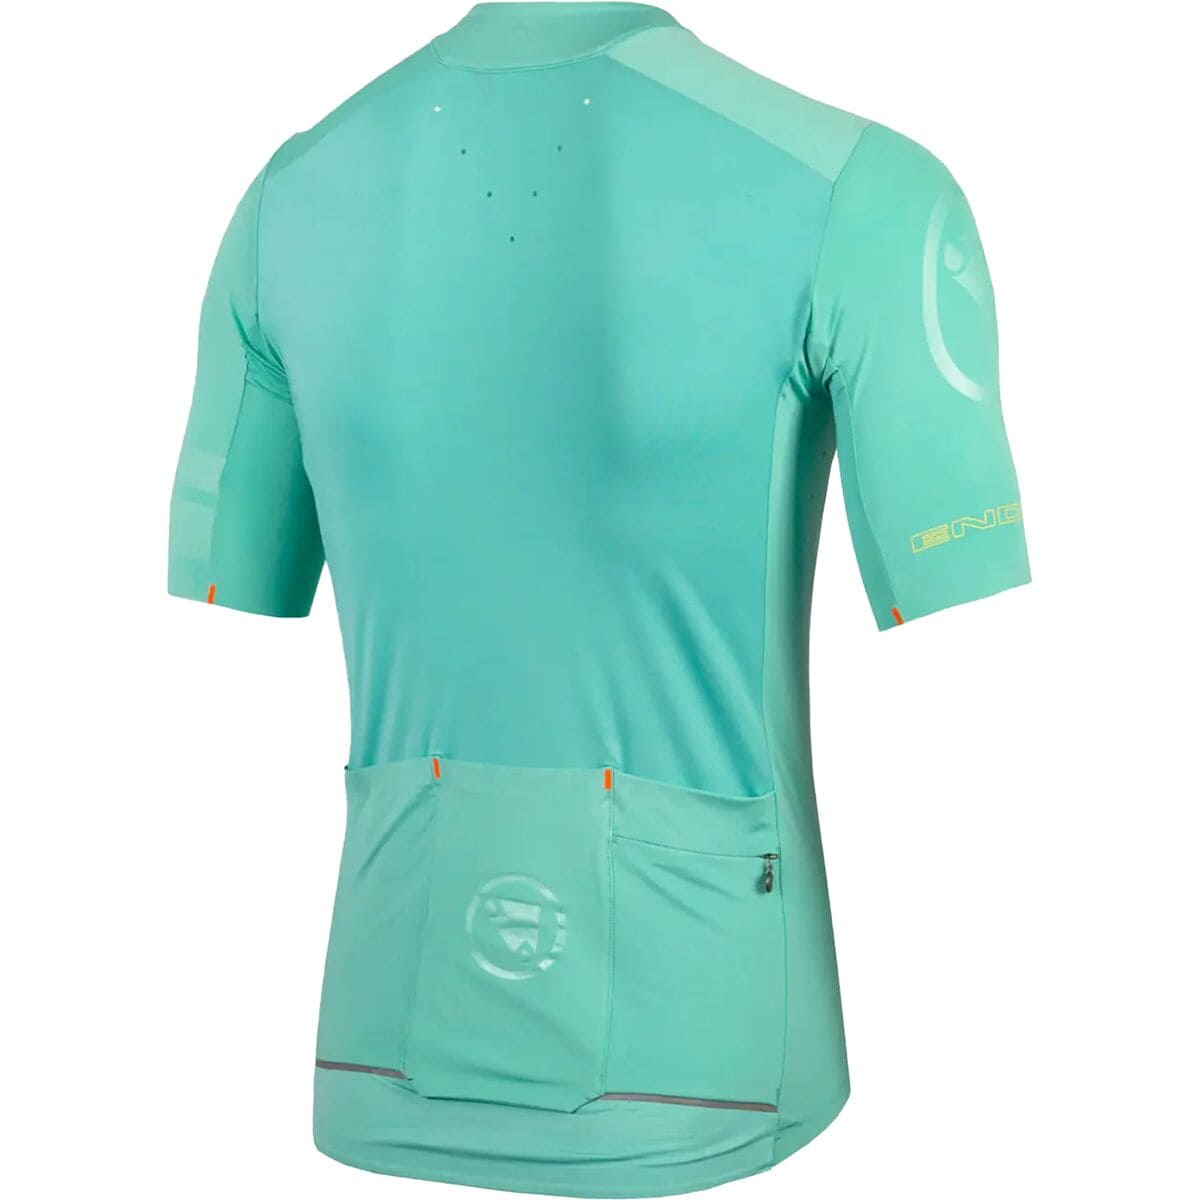 Endura Pro SL Short-Sleeve Jersey - Men's Aqua, XL